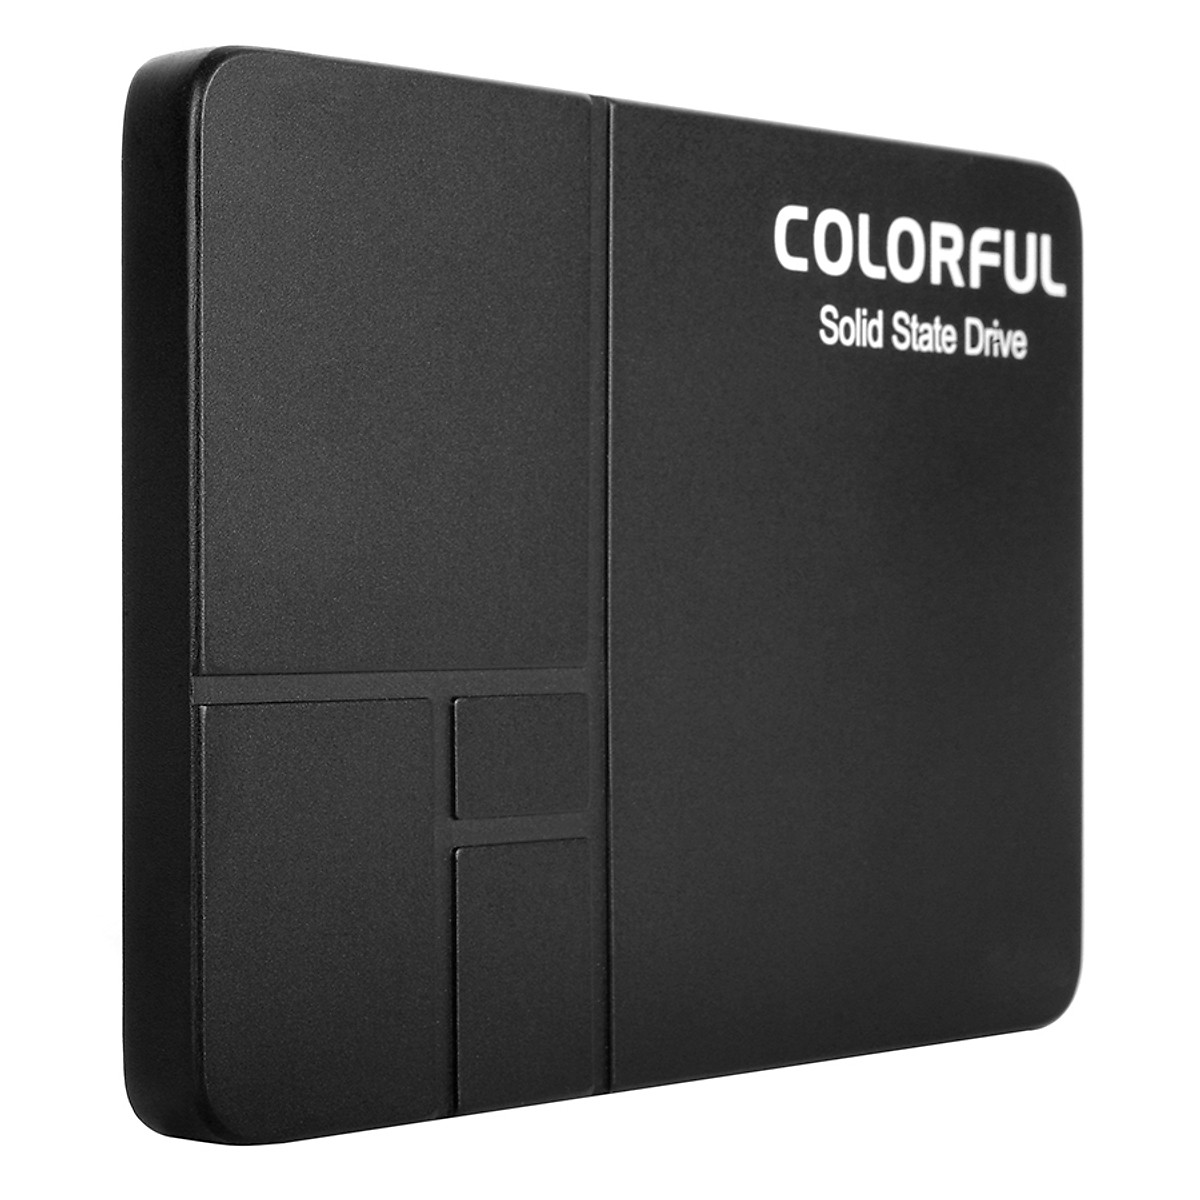 Ổ cứng gắng trong, ổ cứng SSD Colorful SL300120GB SATA III tốc độ 6Gb/s chuẩn 2.5 inch - Hàng chính hãng